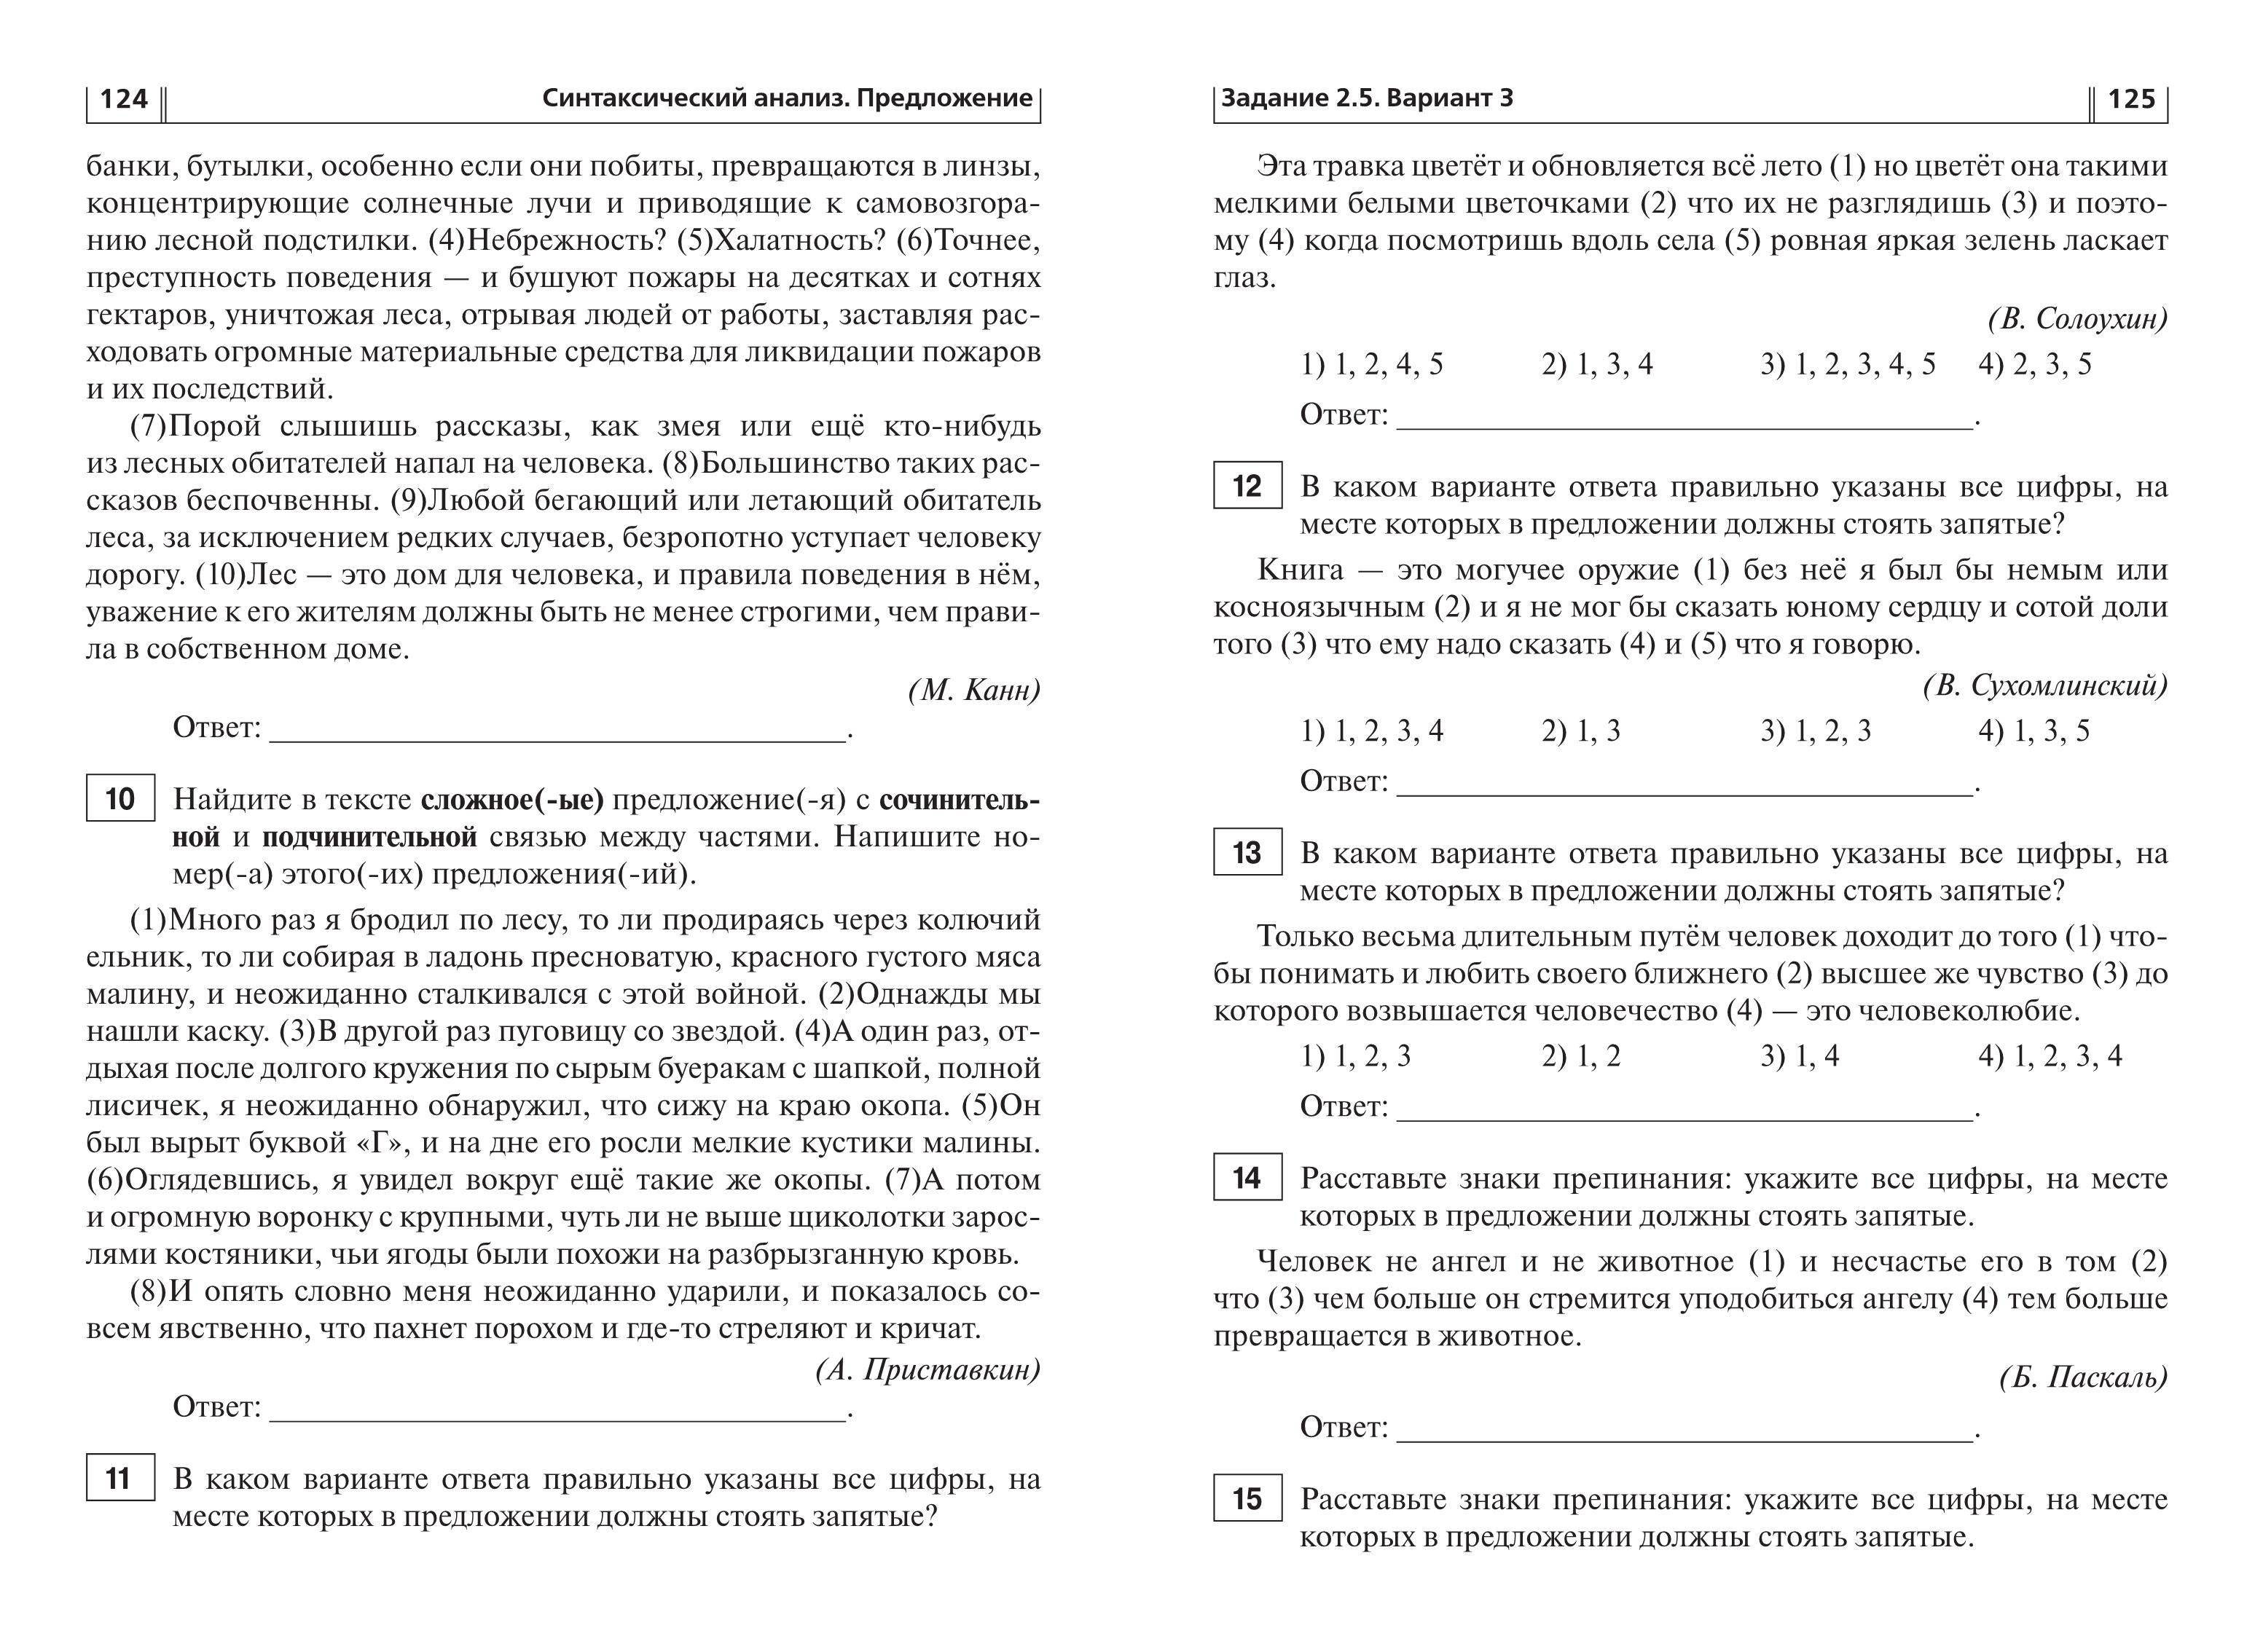 Русский язык. ОГЭ-2021. 9 класс. Тематический тренинг